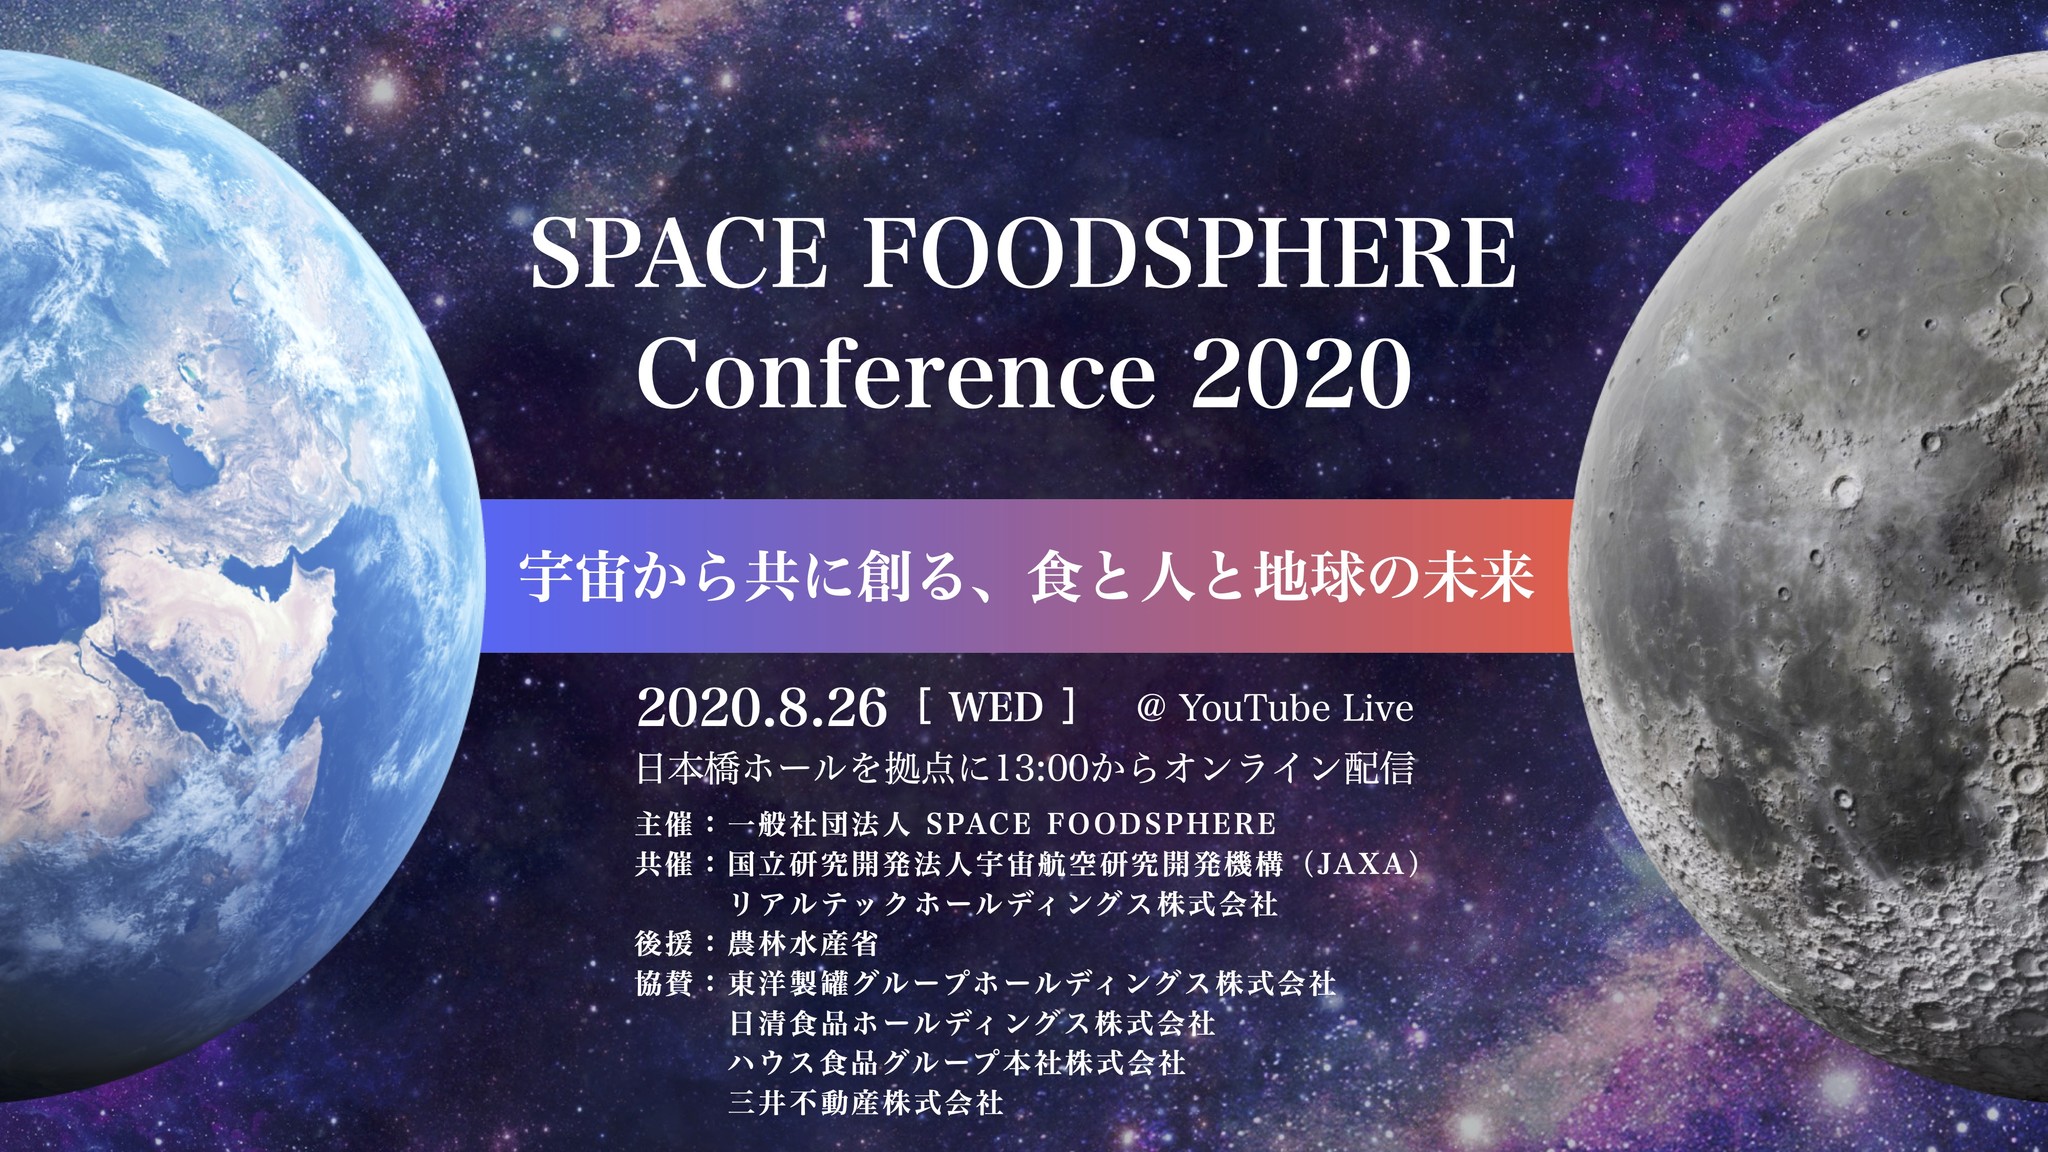 地球と宇宙の食の課題解決を目指す Space Foodsphere のメンバーが未来構想を語るカンファレンスをオンライン開催 一般社団法人 Space Foodsphereのプレスリリース